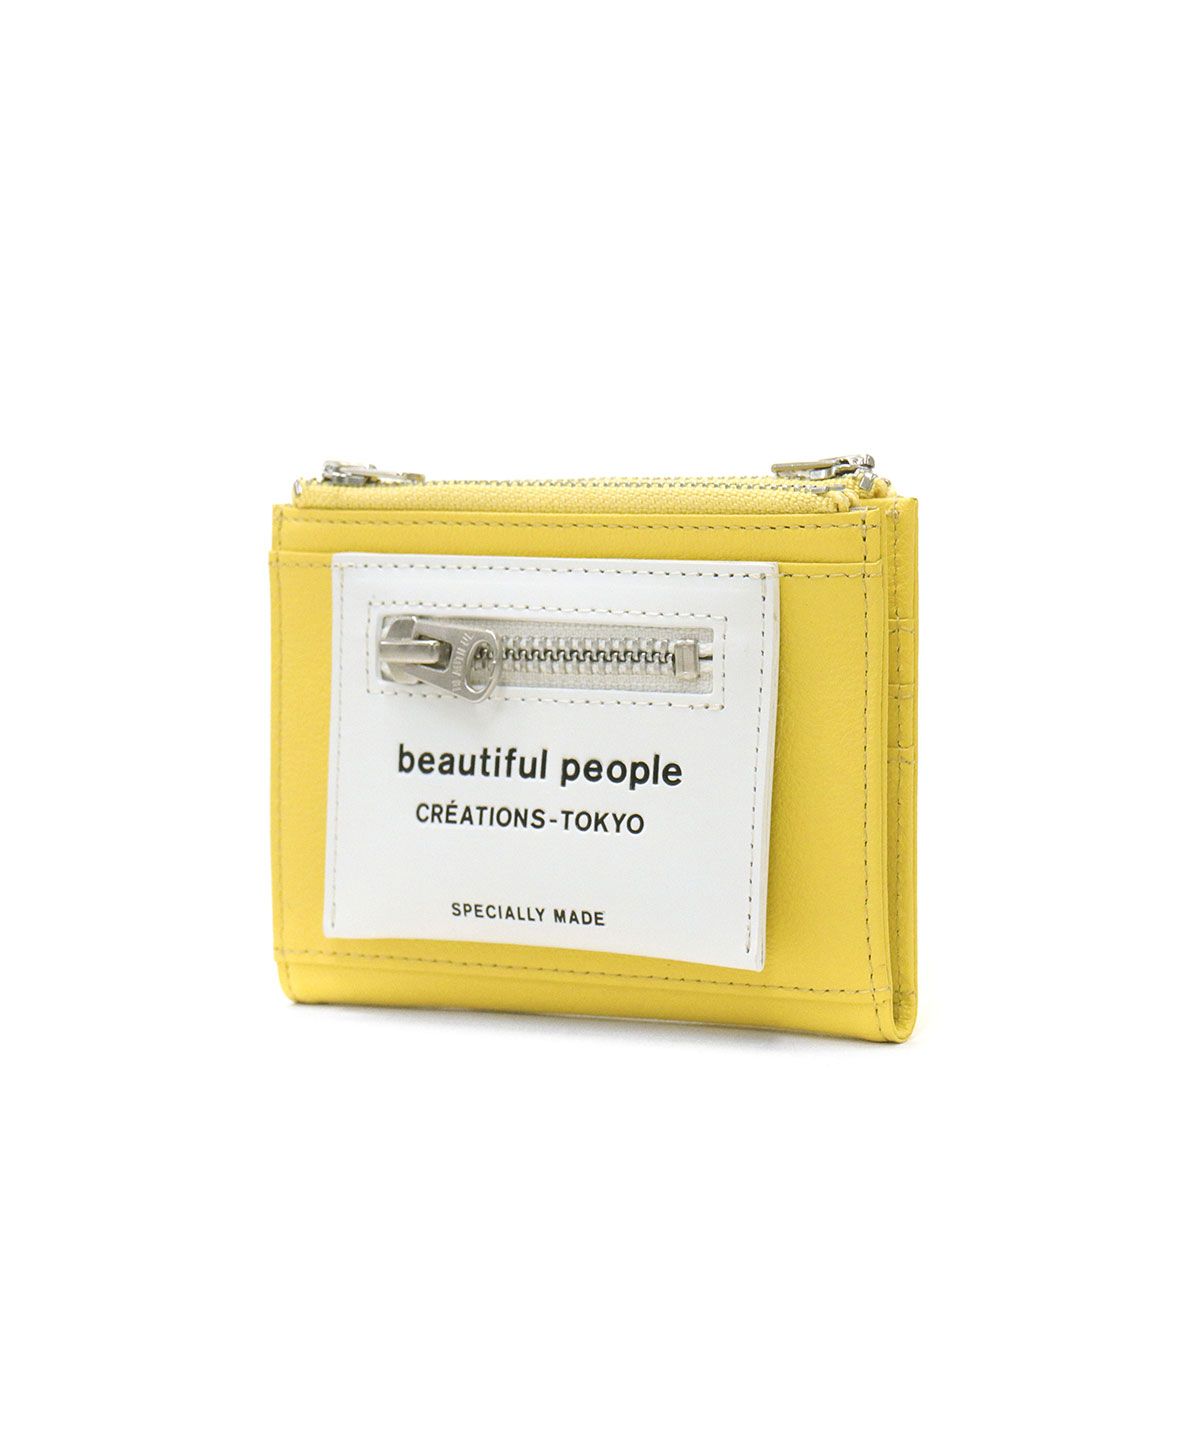 ビューティフルピープル 二つ折り財布 beautiful people lining logo pocket compact wallet  1145511948